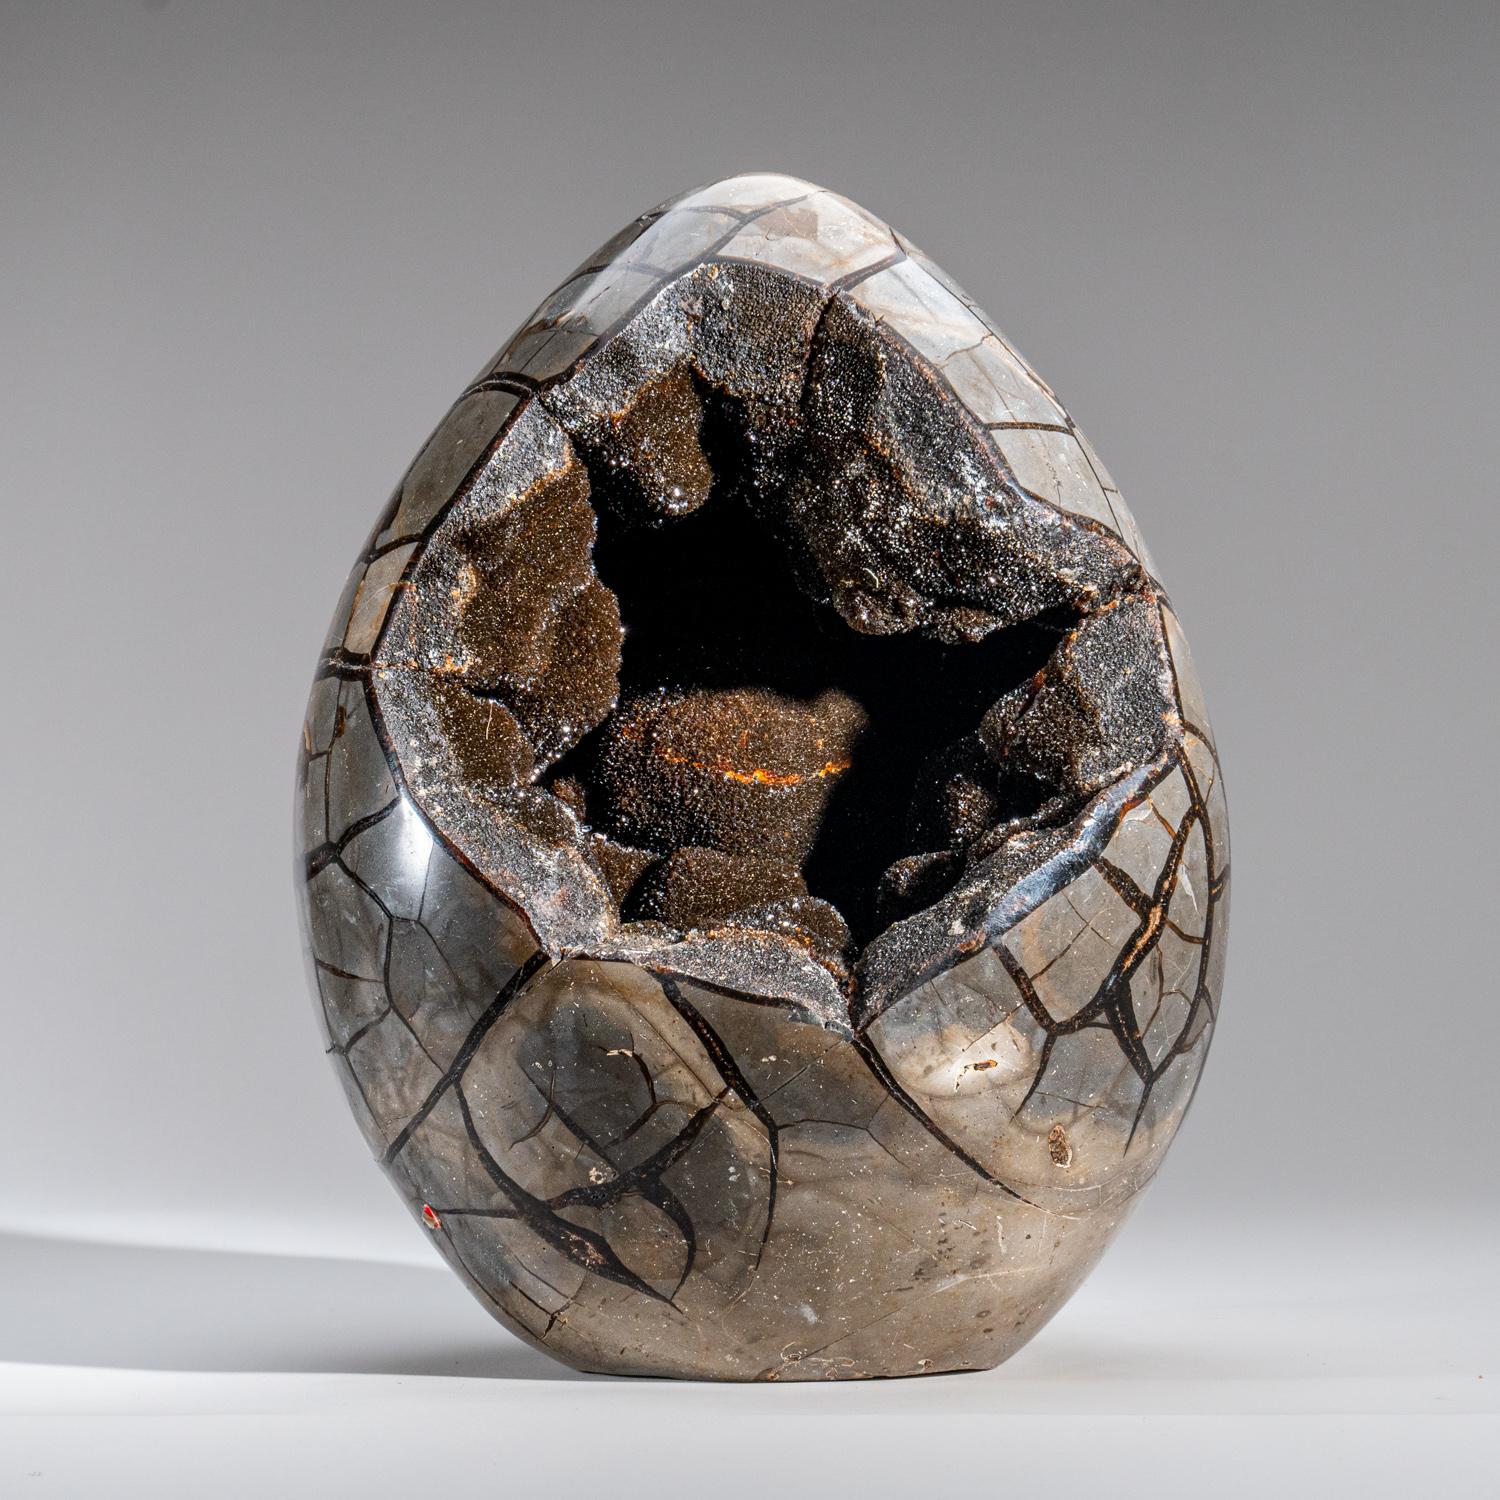 Cet œuf géode poli de 30 livres de qualité AAA avec druzy à l'intérieur, en provenance de Madagascar, présente une zone exposée tapissée d'éblouissants cristaux de quartz druzy, ainsi qu'une face arrière polie, offrant une surface hautement